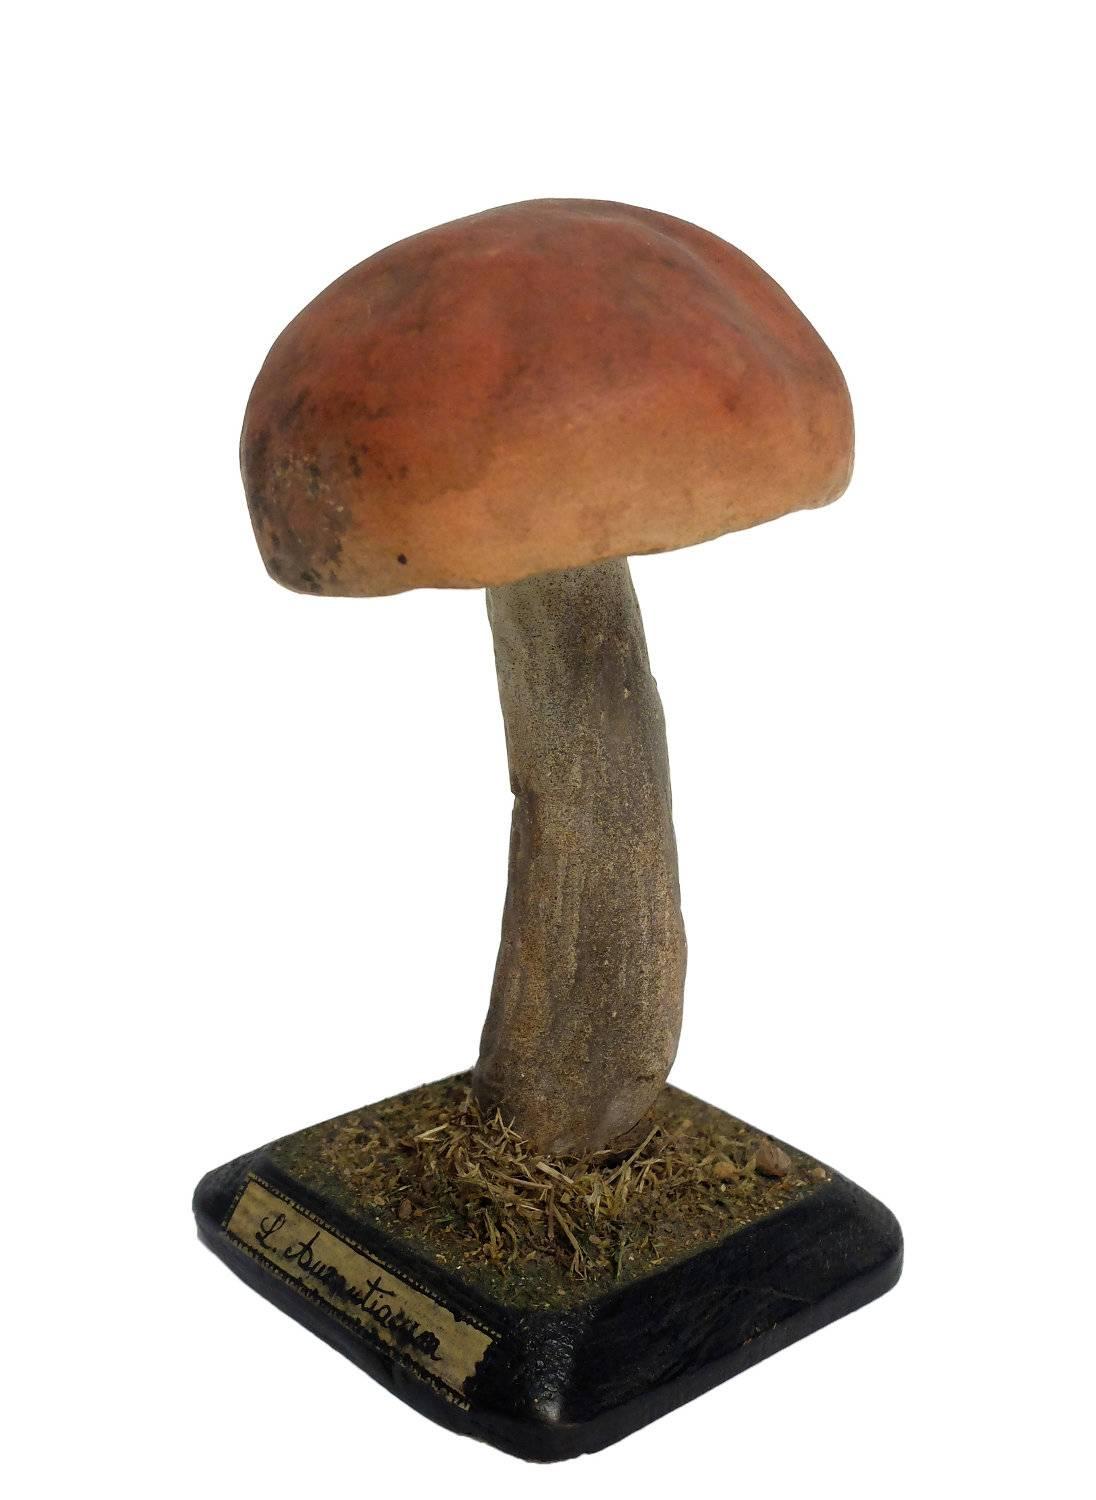 mushroom models